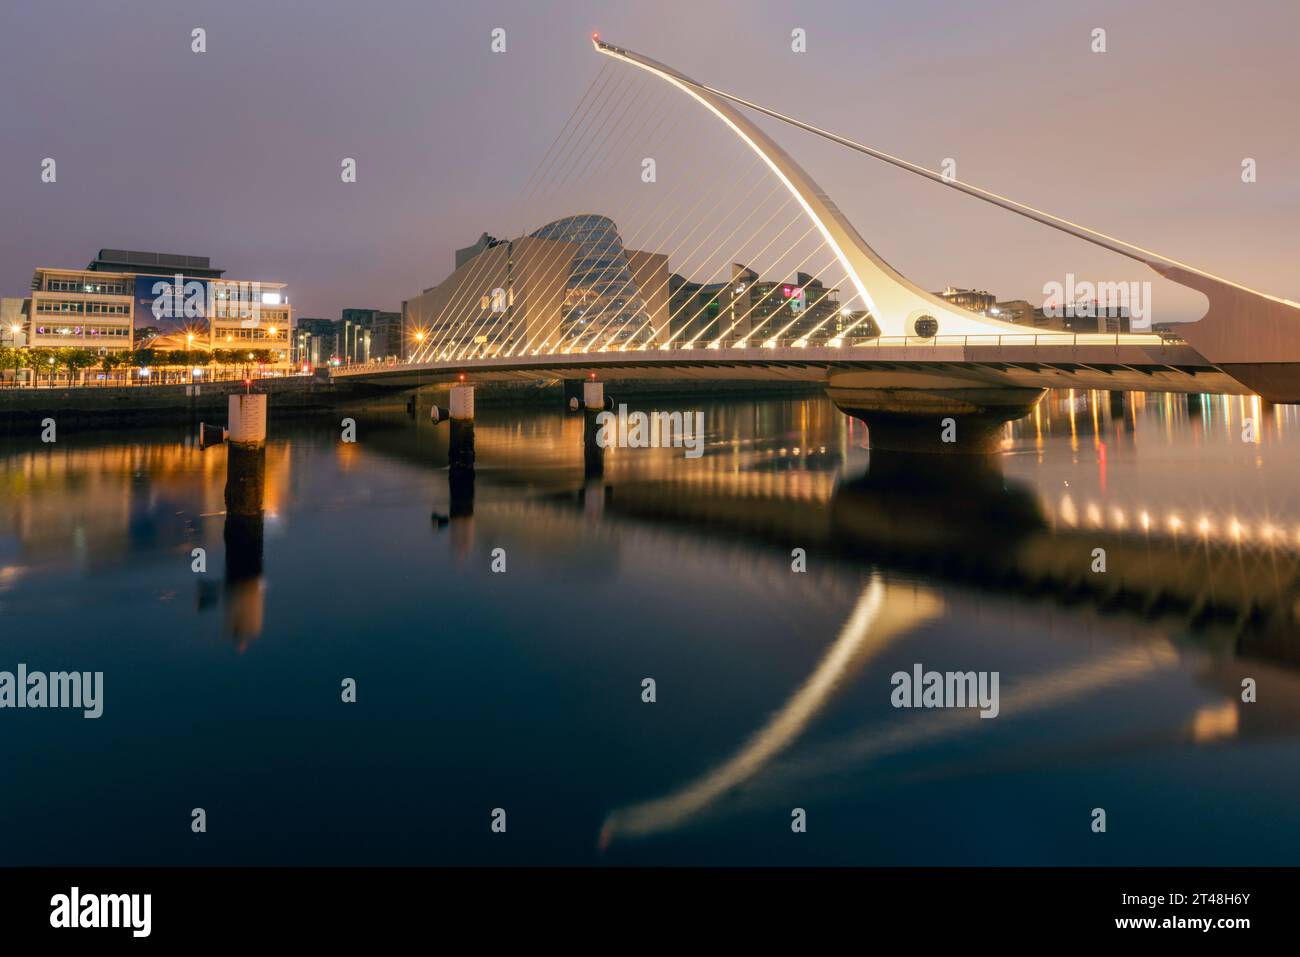 Samuel Beckett Bridge, Dublino, è un iconico ponte sospeso strallato con un design elegante e asimmetrico che ruota di 90 gradi per consentire il traffico fluviale. Foto Stock